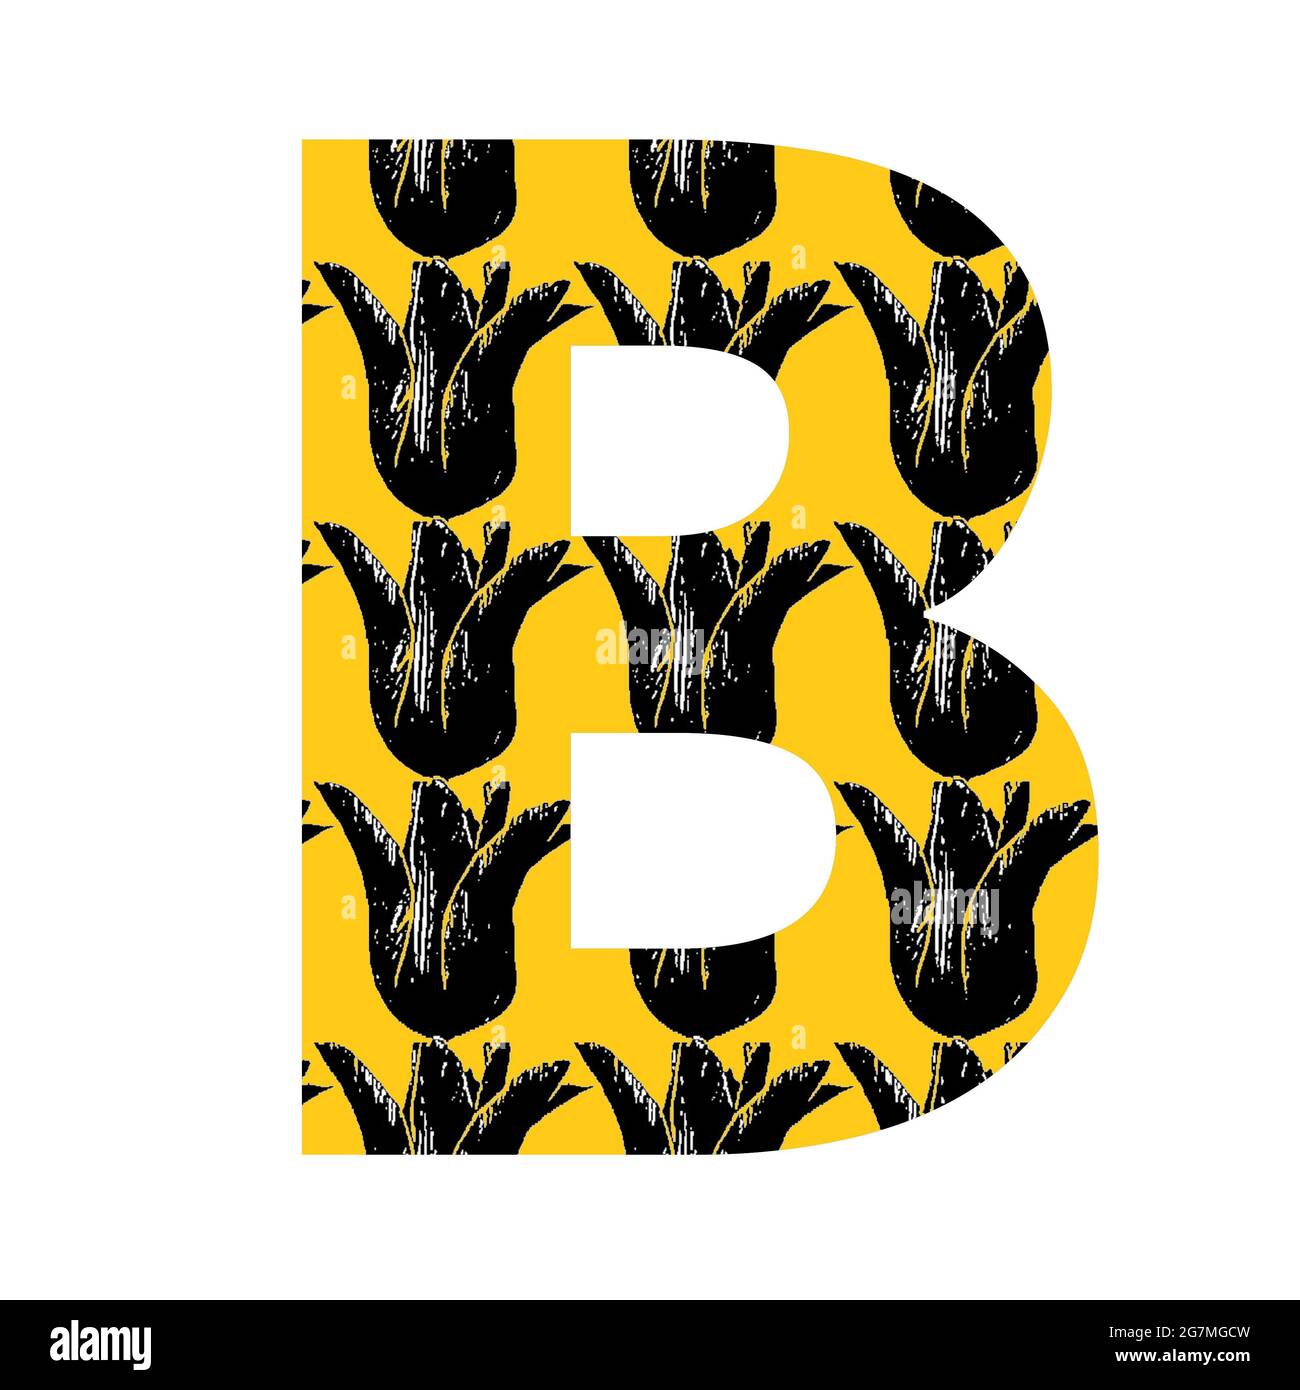 Lettera B dell'alfabeto fatta con un motivo di tulipano nero su sfondo giallo, isolato su sfondo bianco Foto Stock